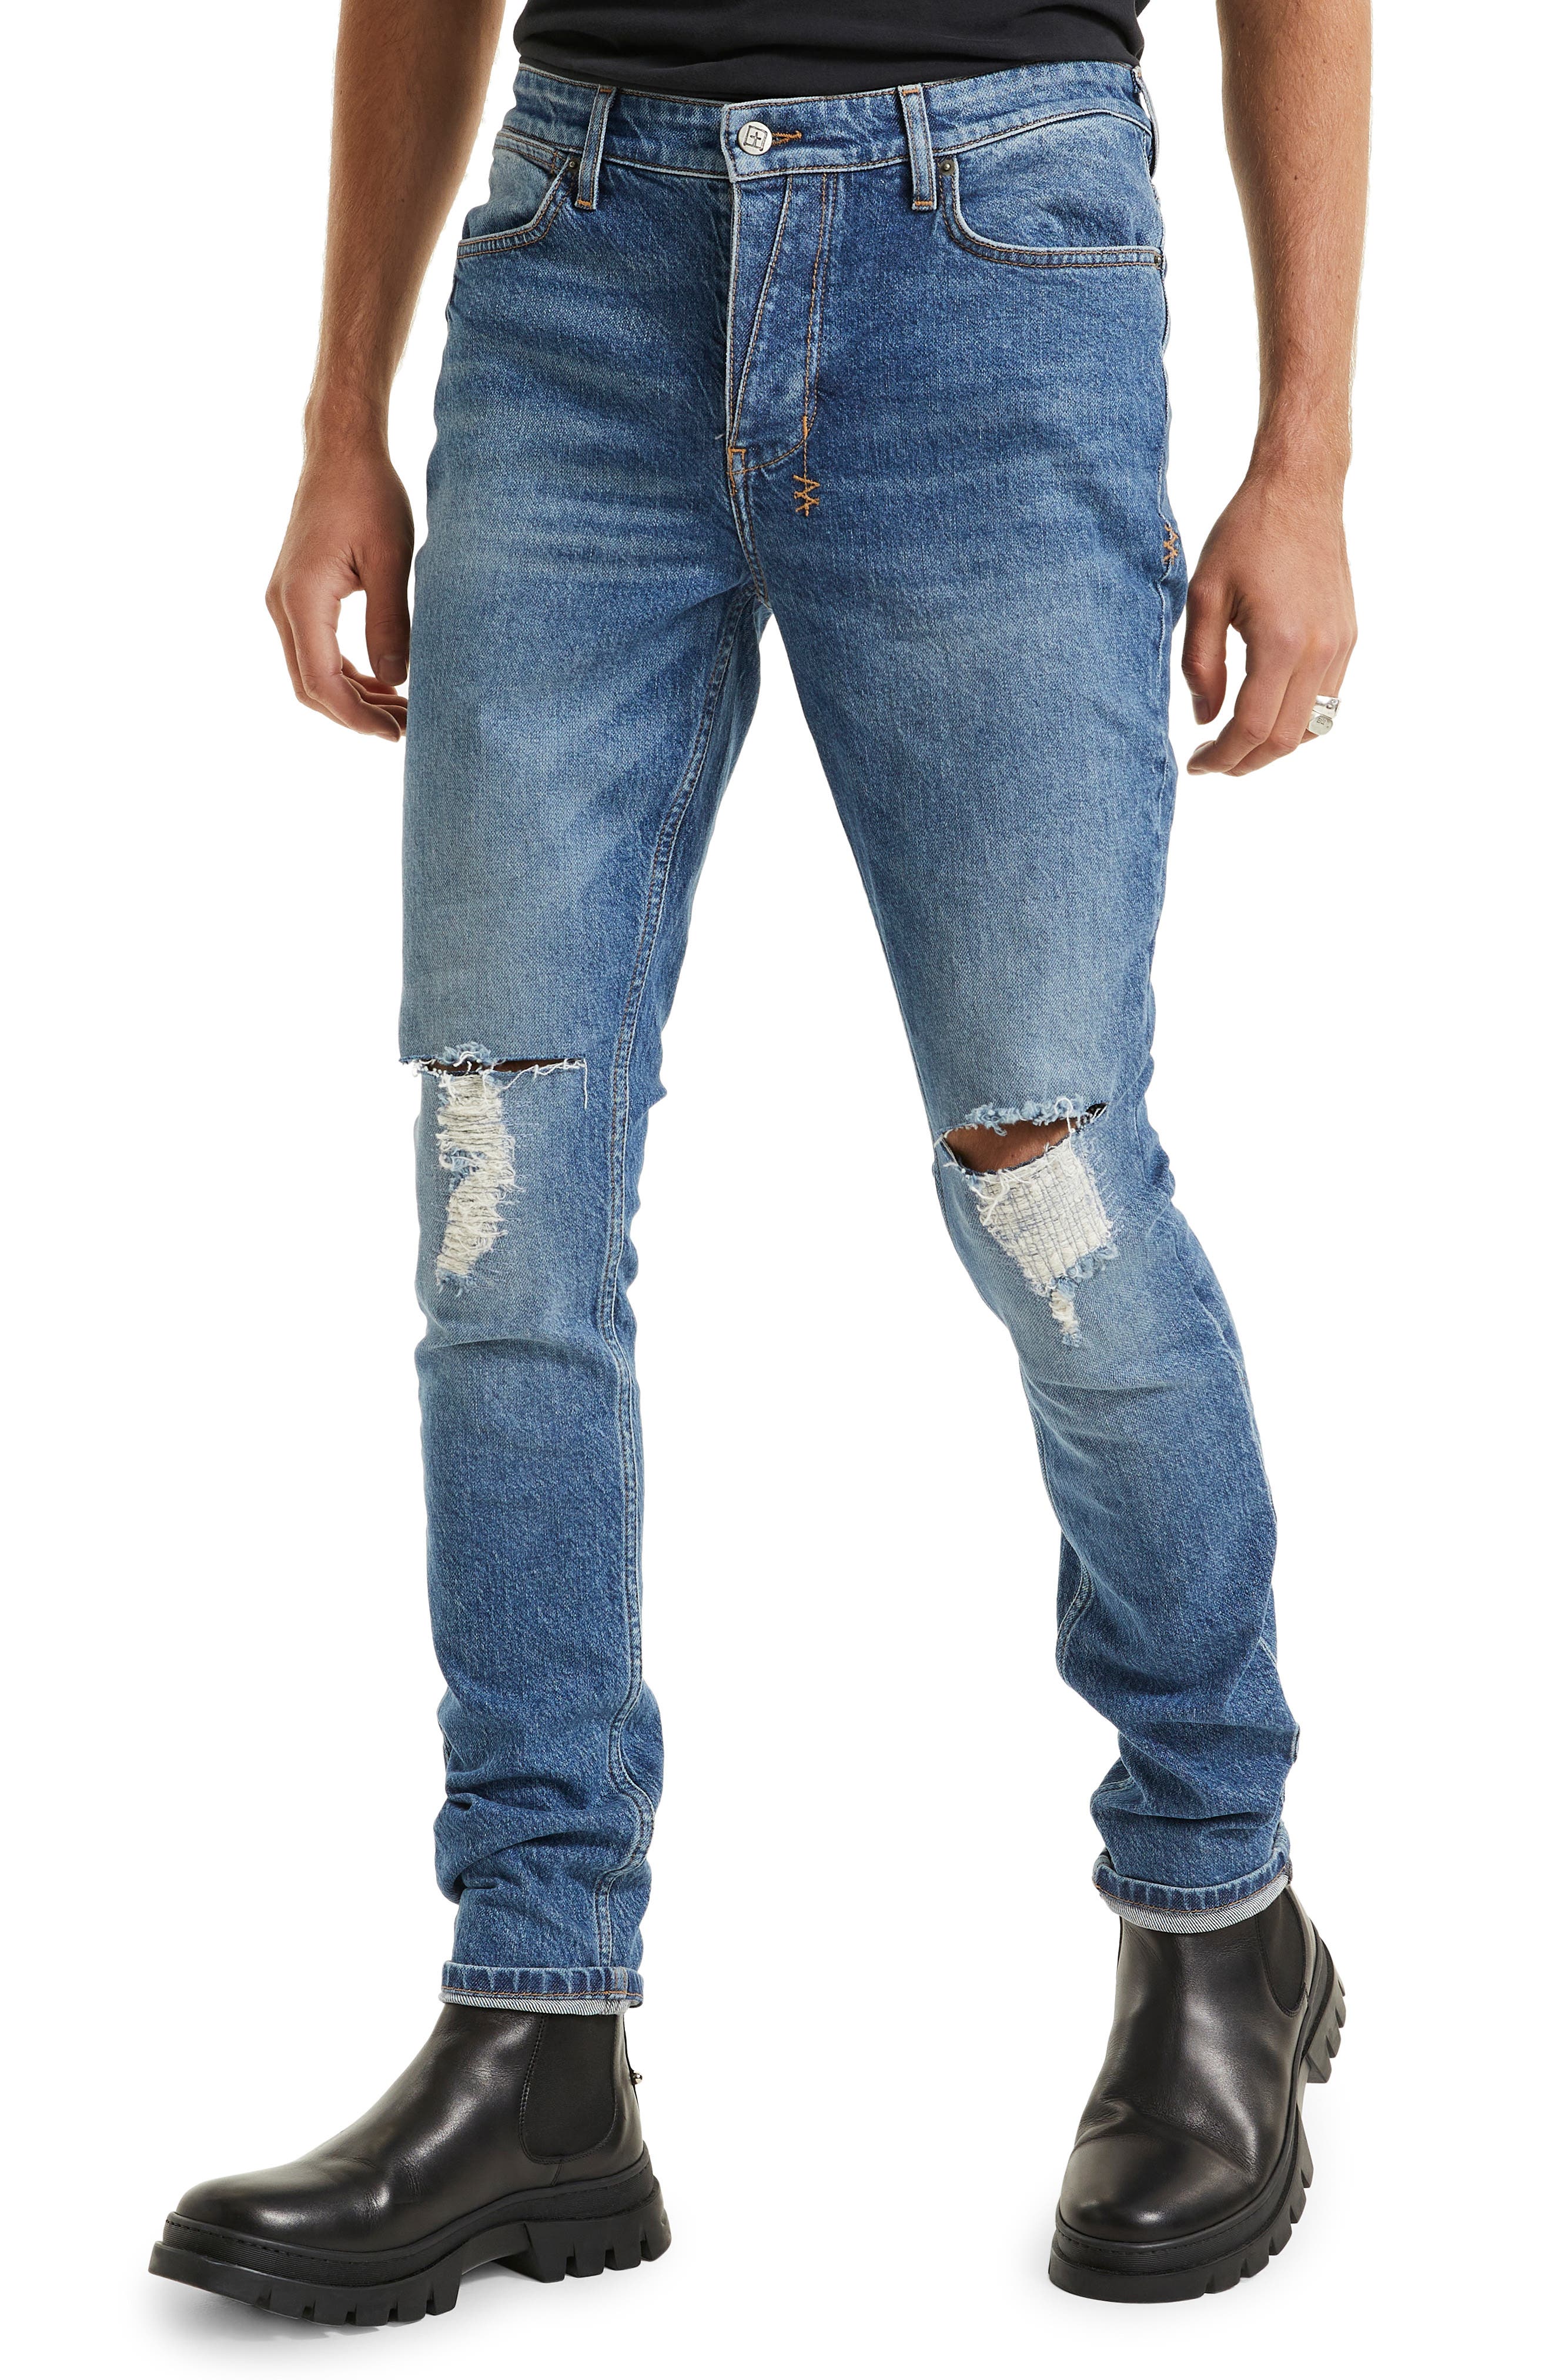 Ksubi Van Winkle Blazed Trashed Skinny Jeans in Denim at Nordstrom, Size 30